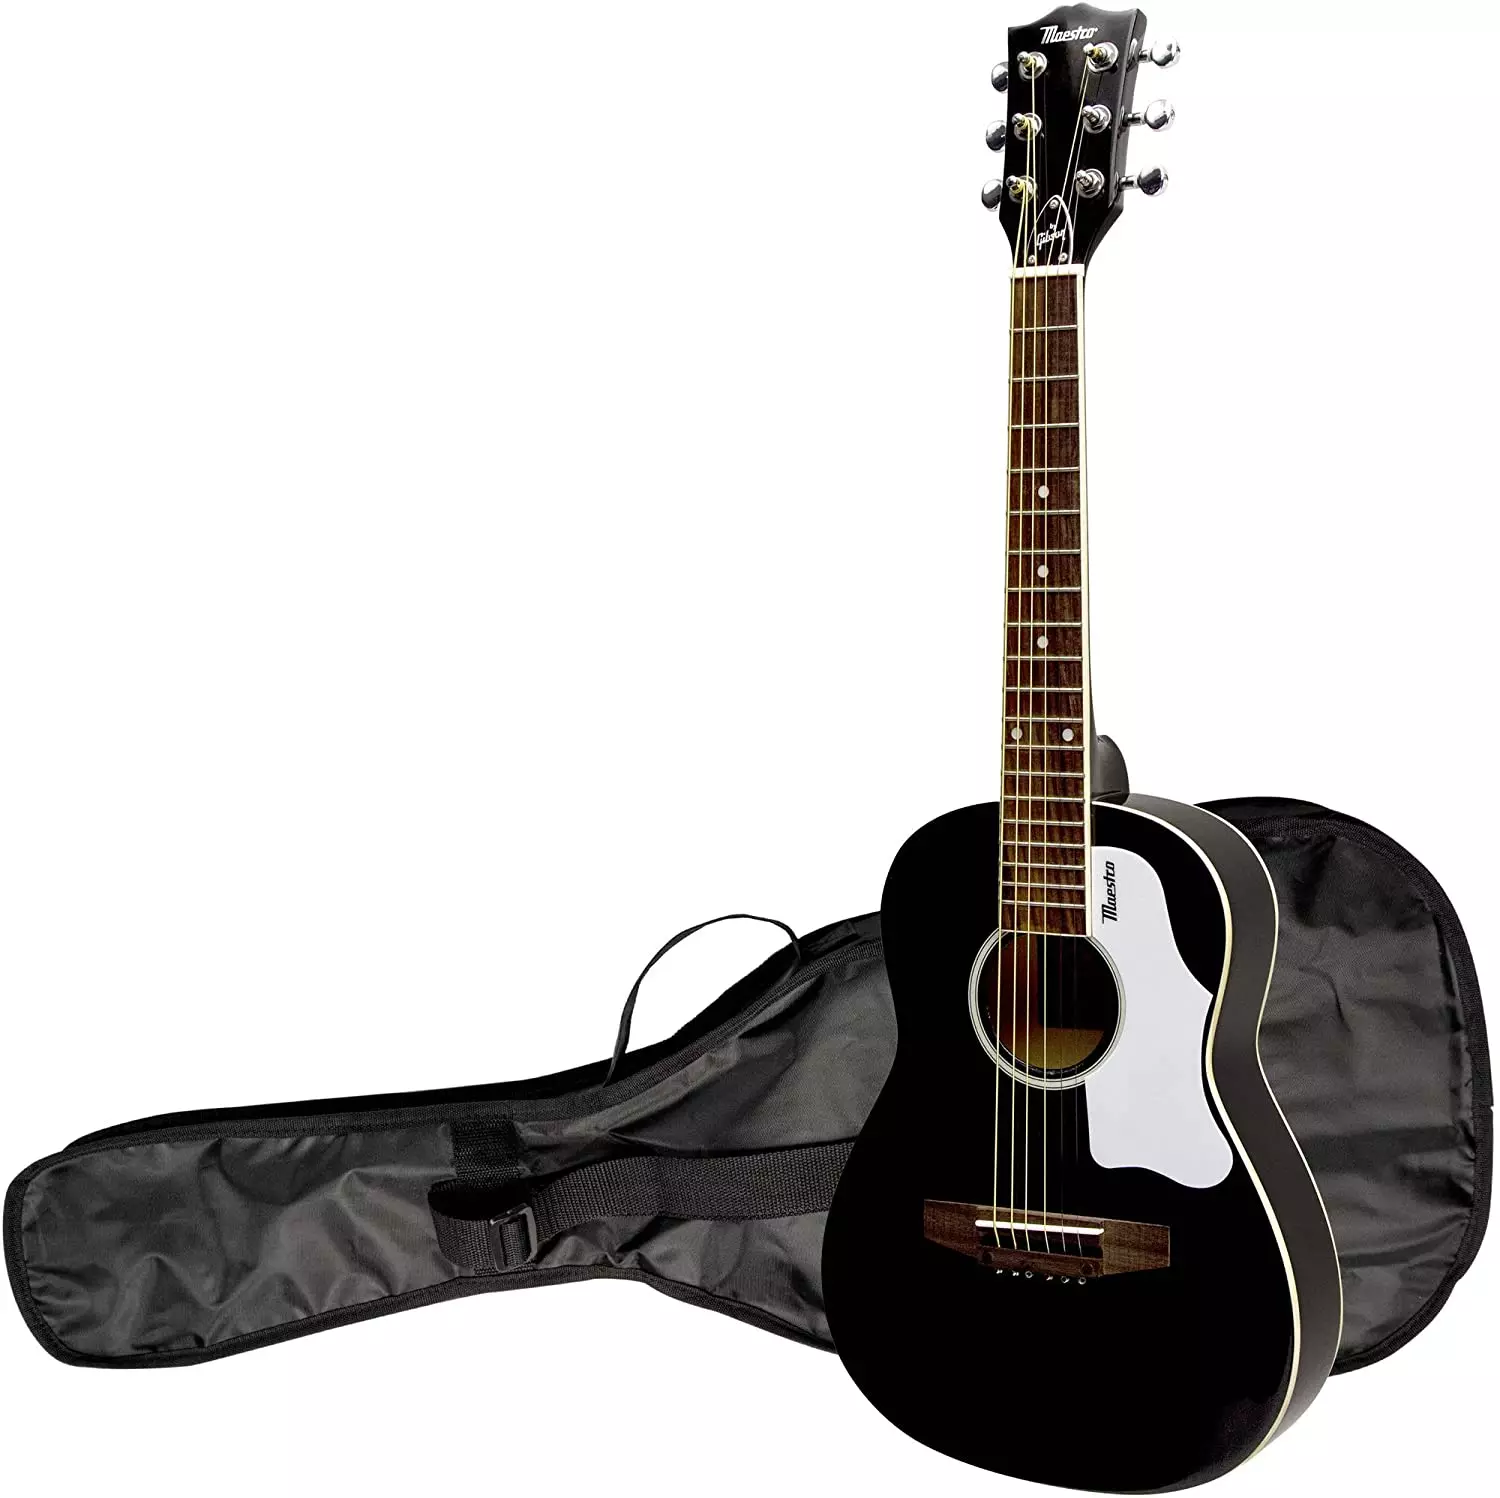 ब्लैक गिटार: क्लासिक छह-स्ट्रिंग और अन्य गिटार, सफेद और लाल-काला रंग, मैट और चमक 26252_8